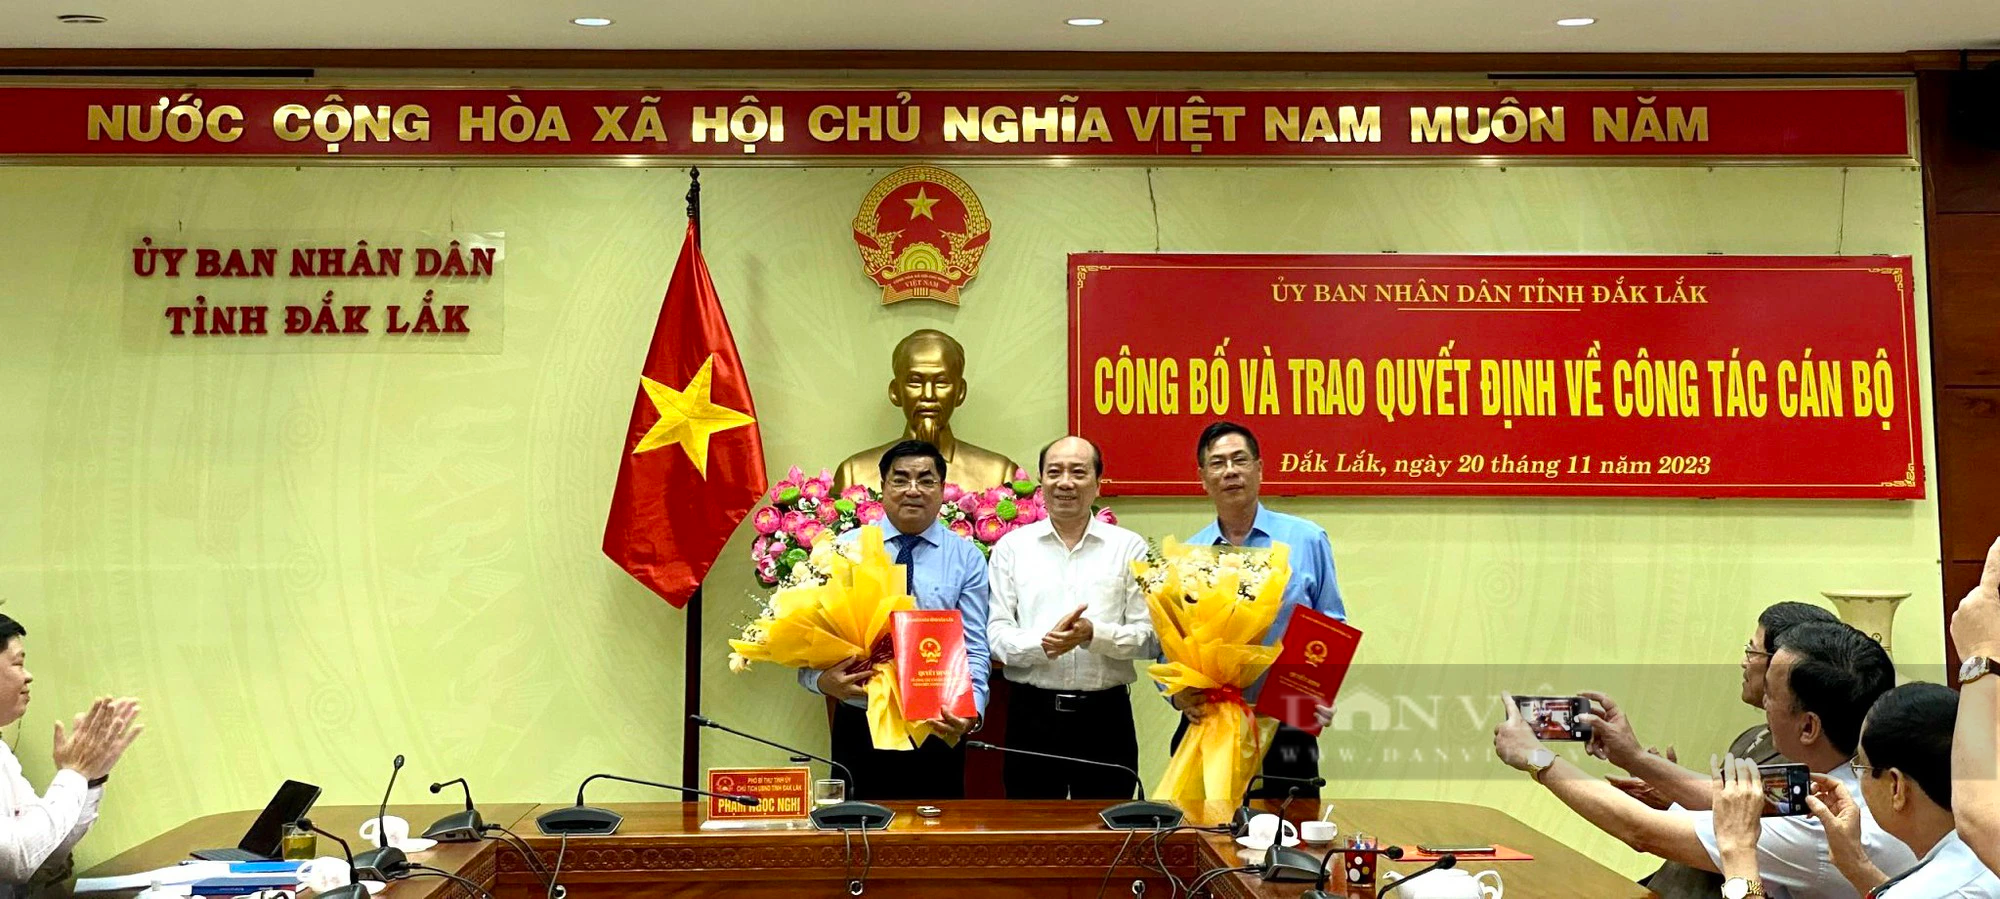 Giám đốc Sở Kế hoạch và Đầu tư được bổ nhiệm làm Chánh Thanh tra tỉnh Đắk Lắk - Ảnh 1.